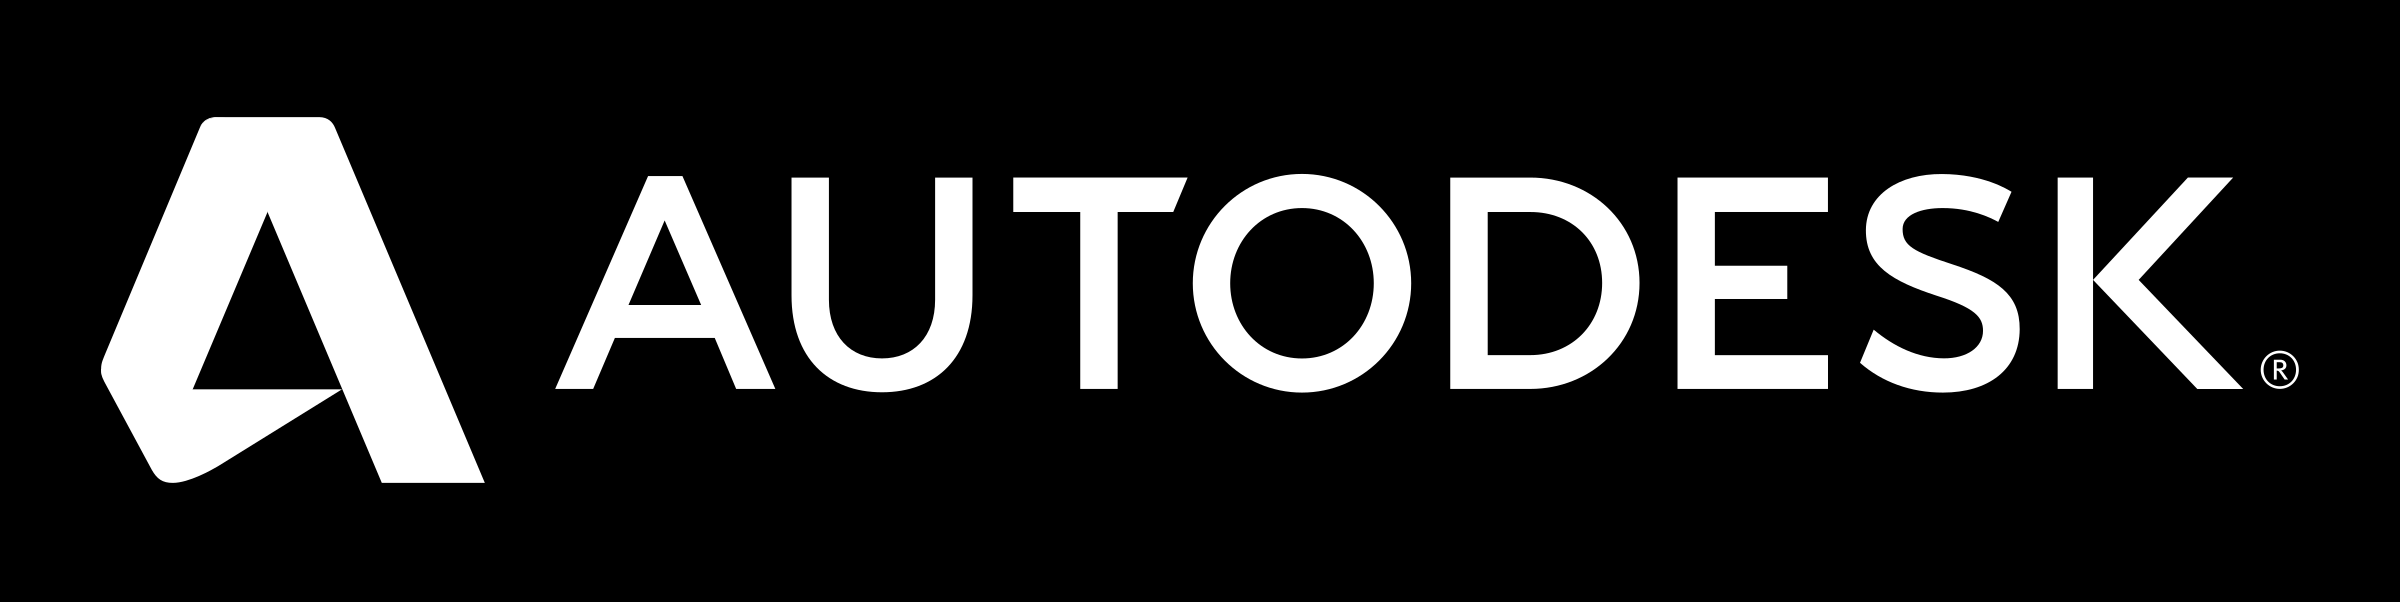 autodesk-logo-white.png